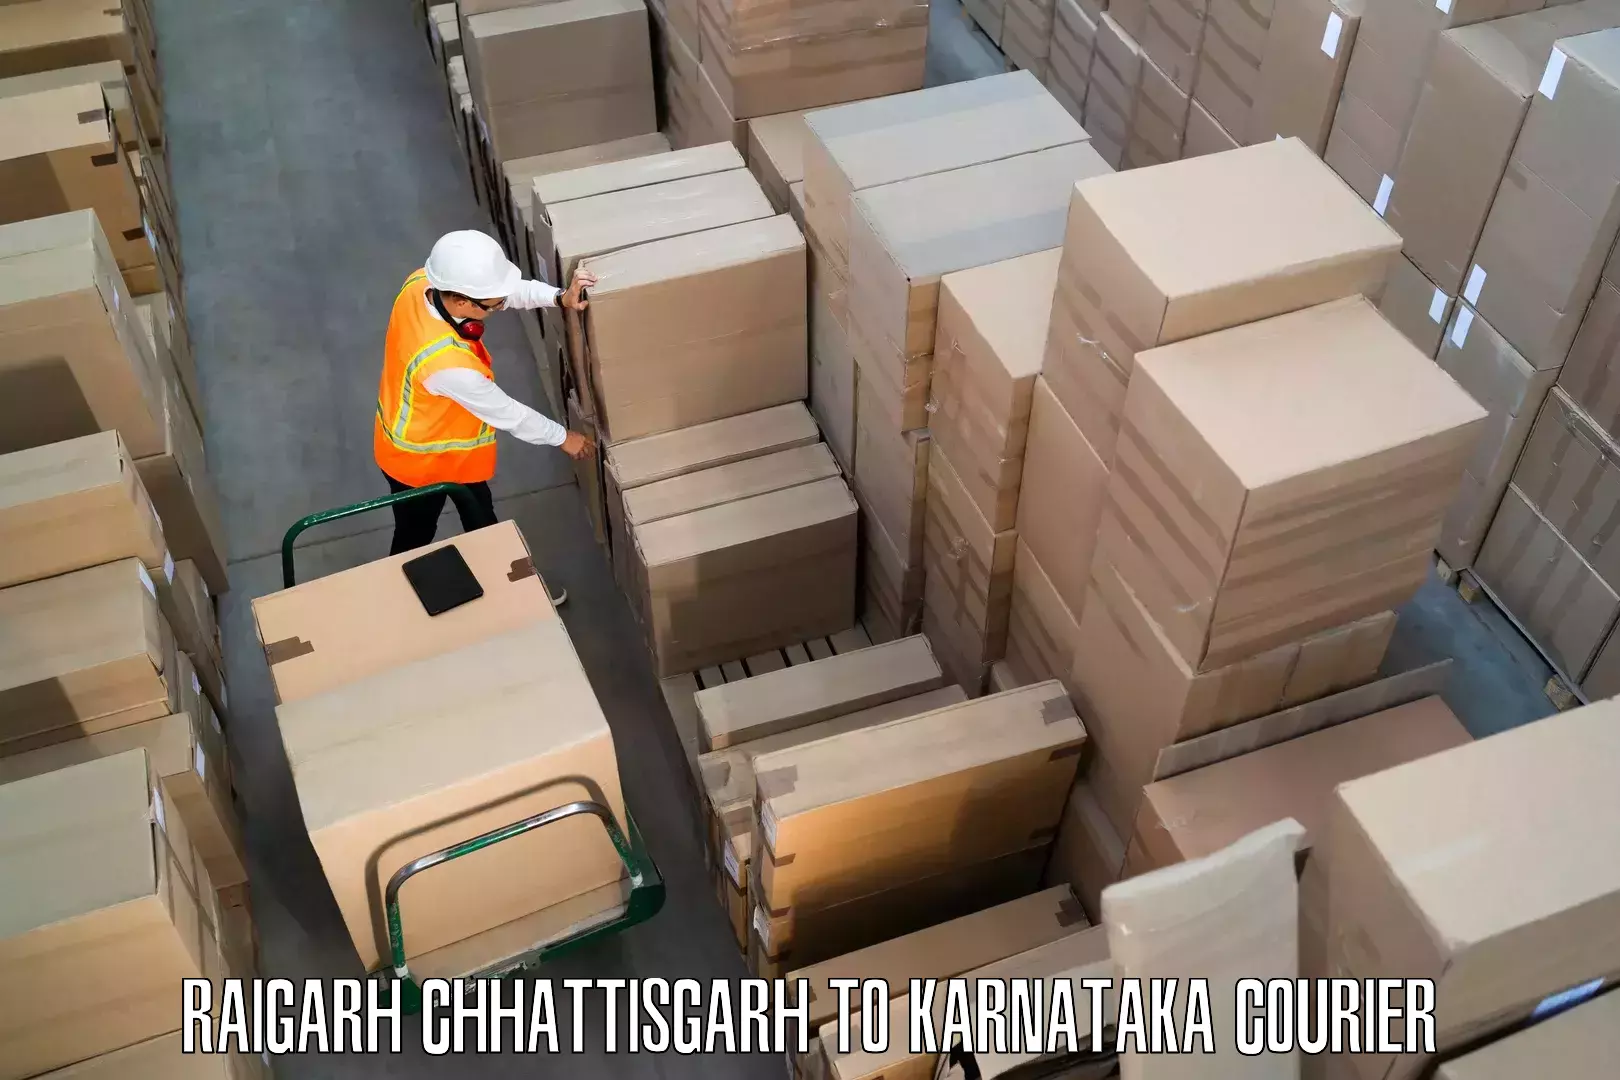 Furniture movers and packers Raigarh Chhattisgarh to Kodagu